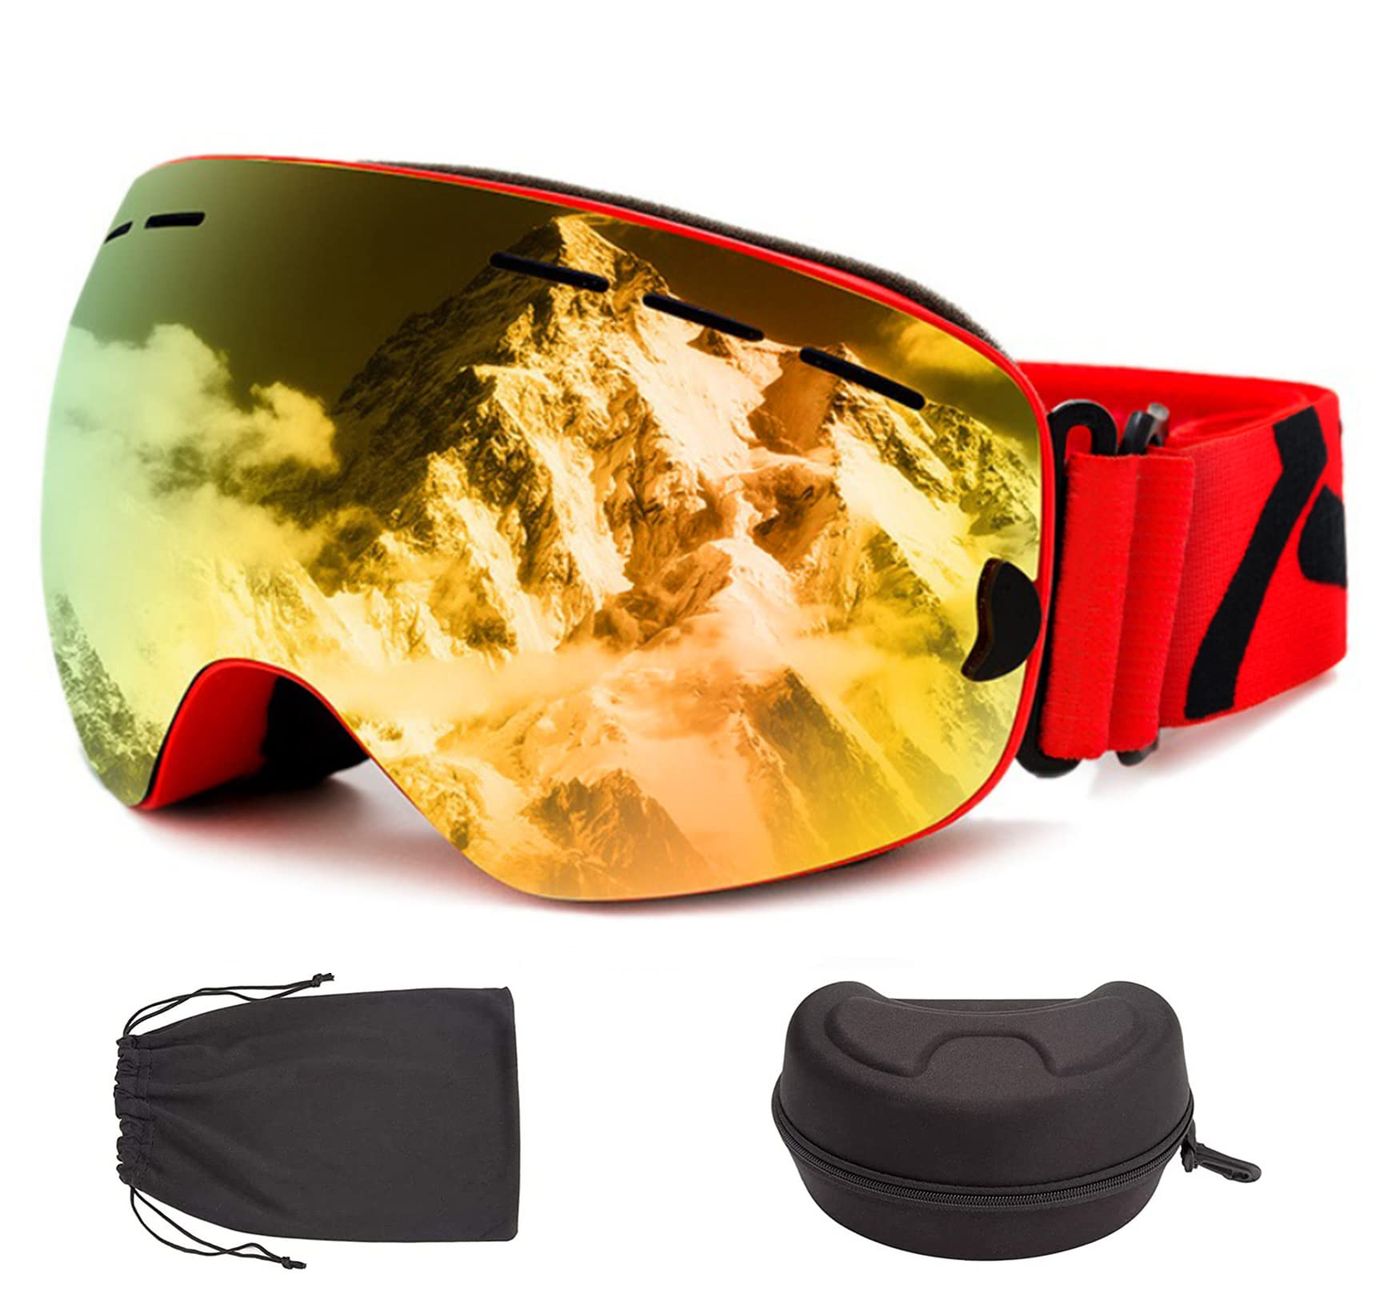 [BOFAC] スキーゴーグル スノーゴーグル 球面ゴーグル 180度大視野 99%UVカット スノーボードゴーグル 曇り防止 メガネ対応 大人 男女兼用 収納ケース付き